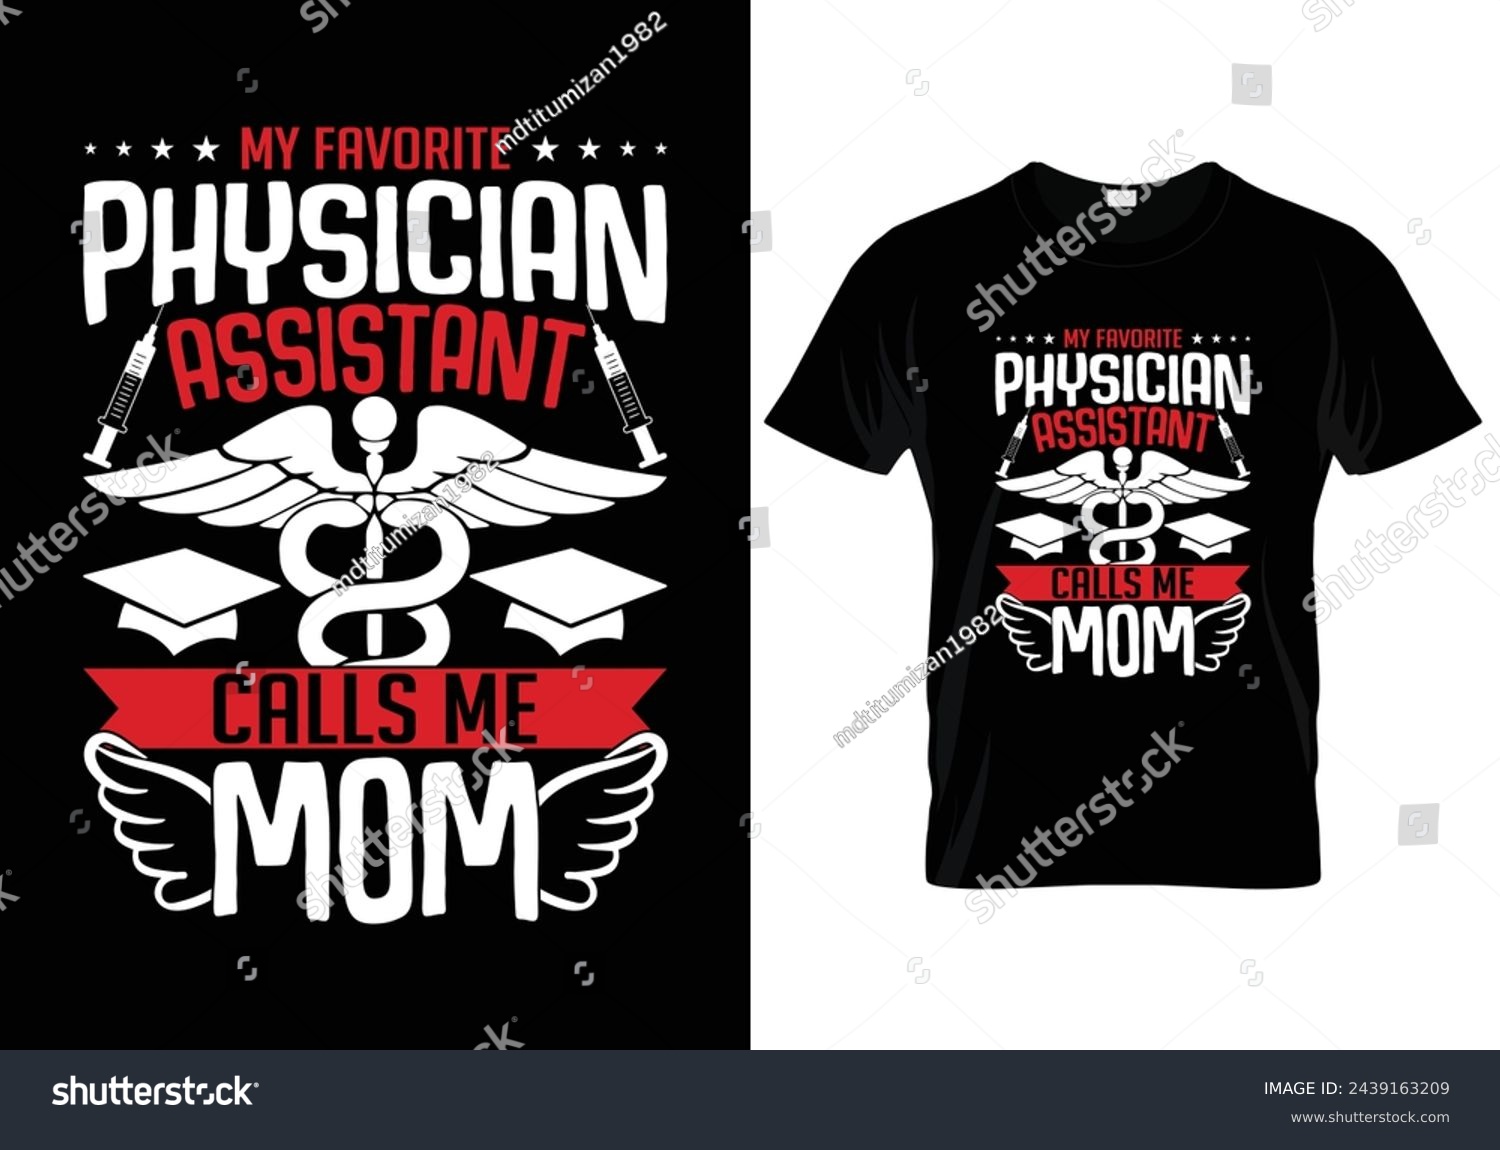 SVG of My favorite physician assistant calls me mom nursing t shirt design. vector illustration svg